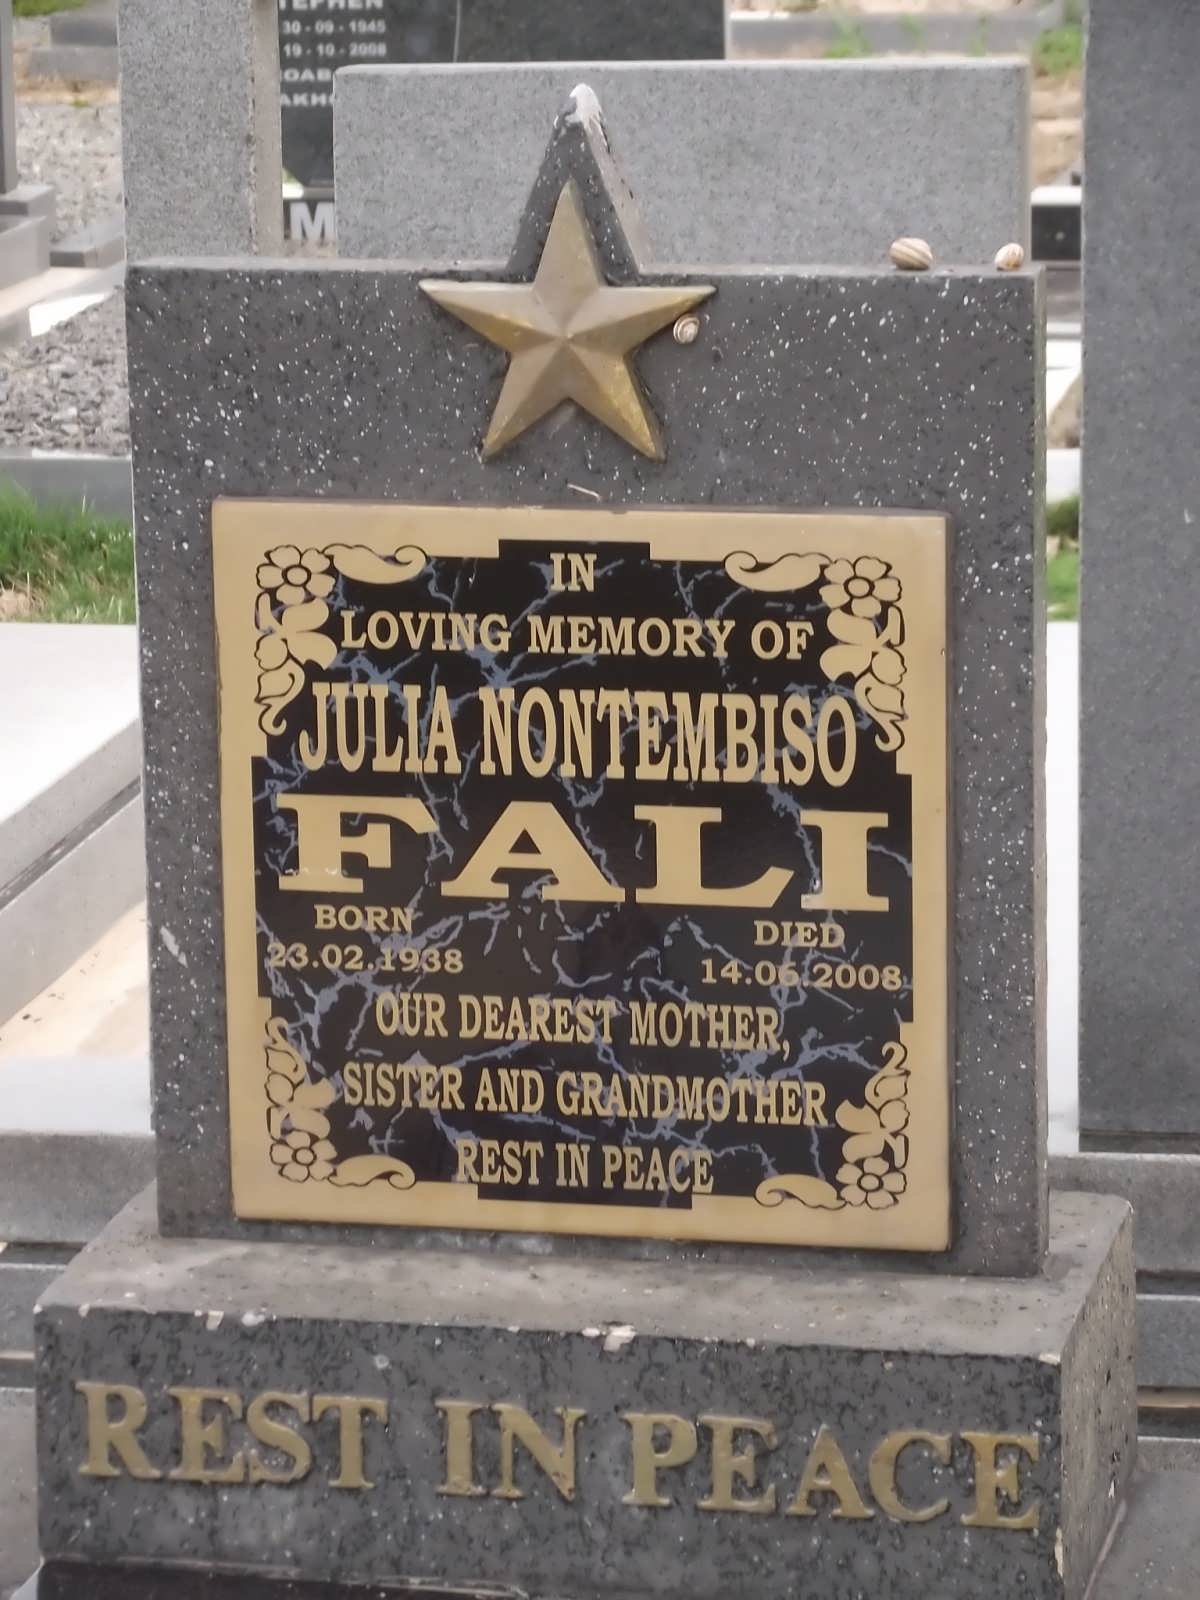 FALI Julia Nontembiso 1938-2008